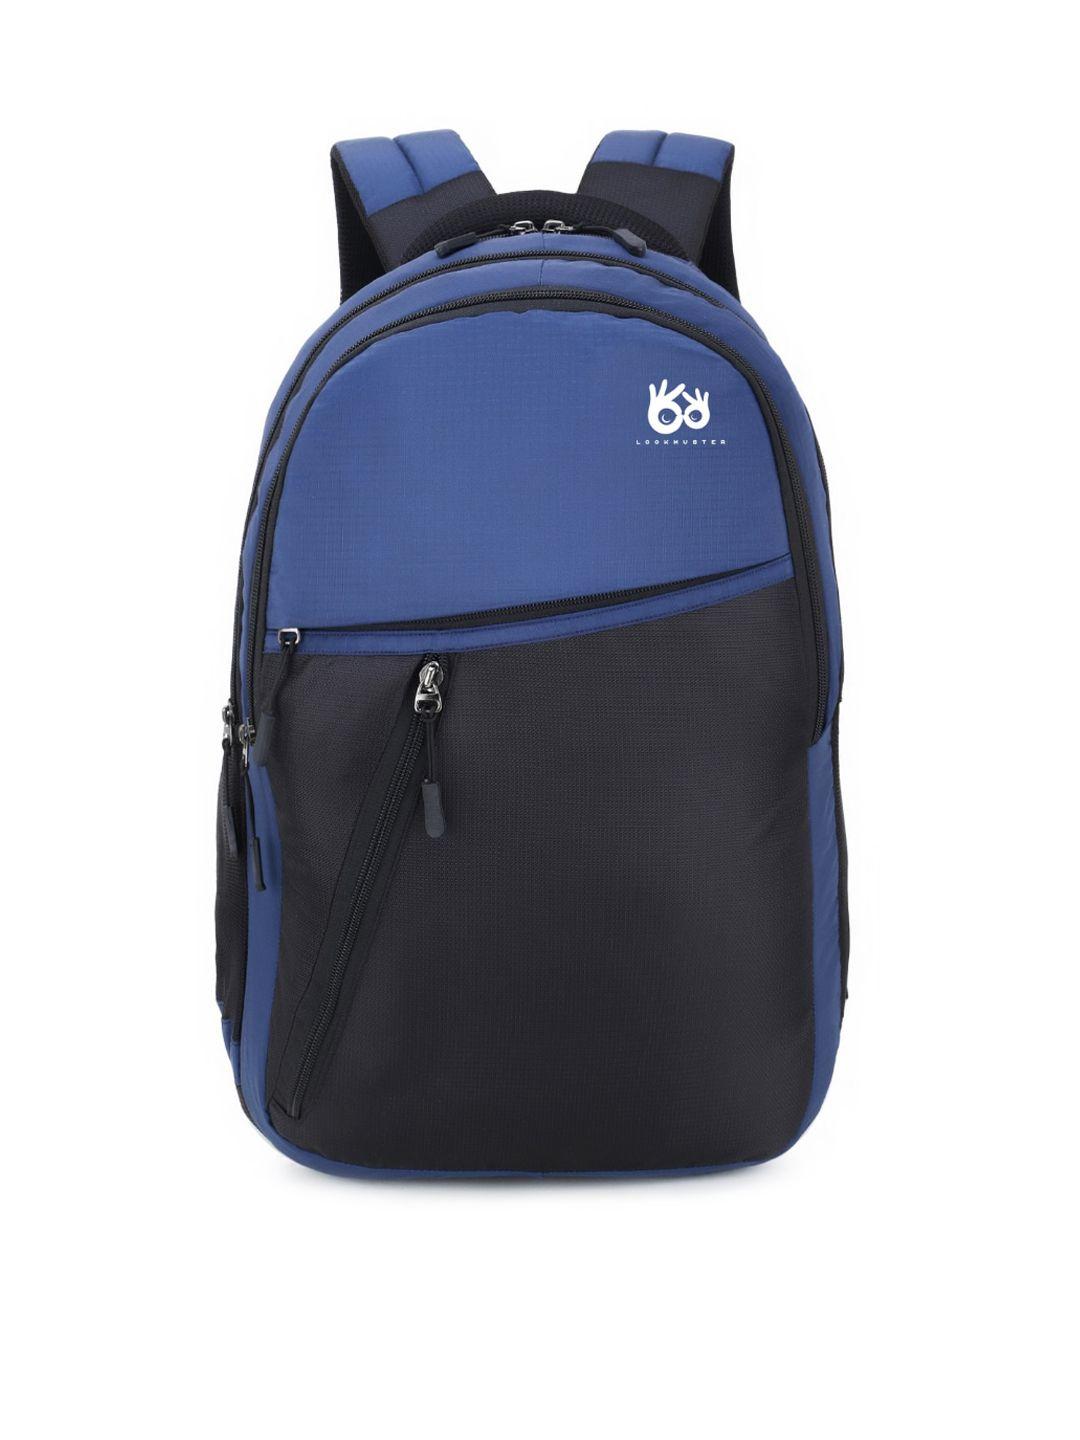 lookmuster unisex navy blue & black waterproof laptop backpacks